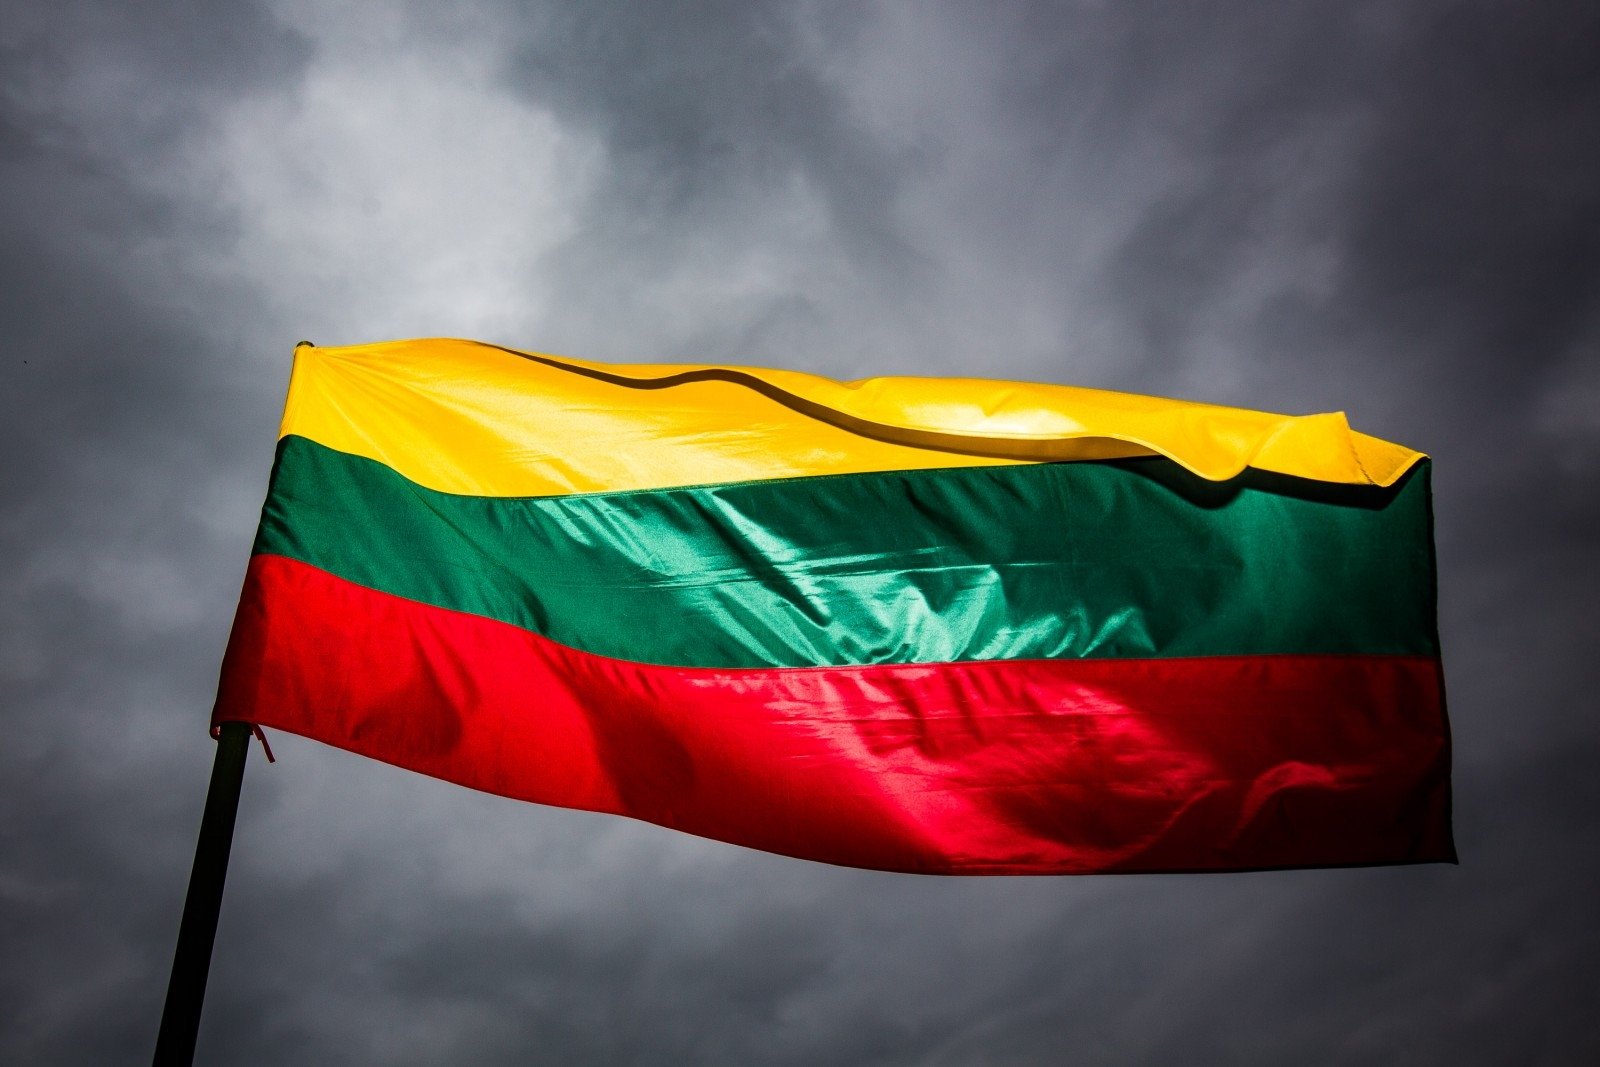 Lietuvos skyrius pašalintas iš tarptautinės nevyriausybinės organizacijos ICOMOS, besirūpinančios paminklų ir lankytinų vietų apsauga.